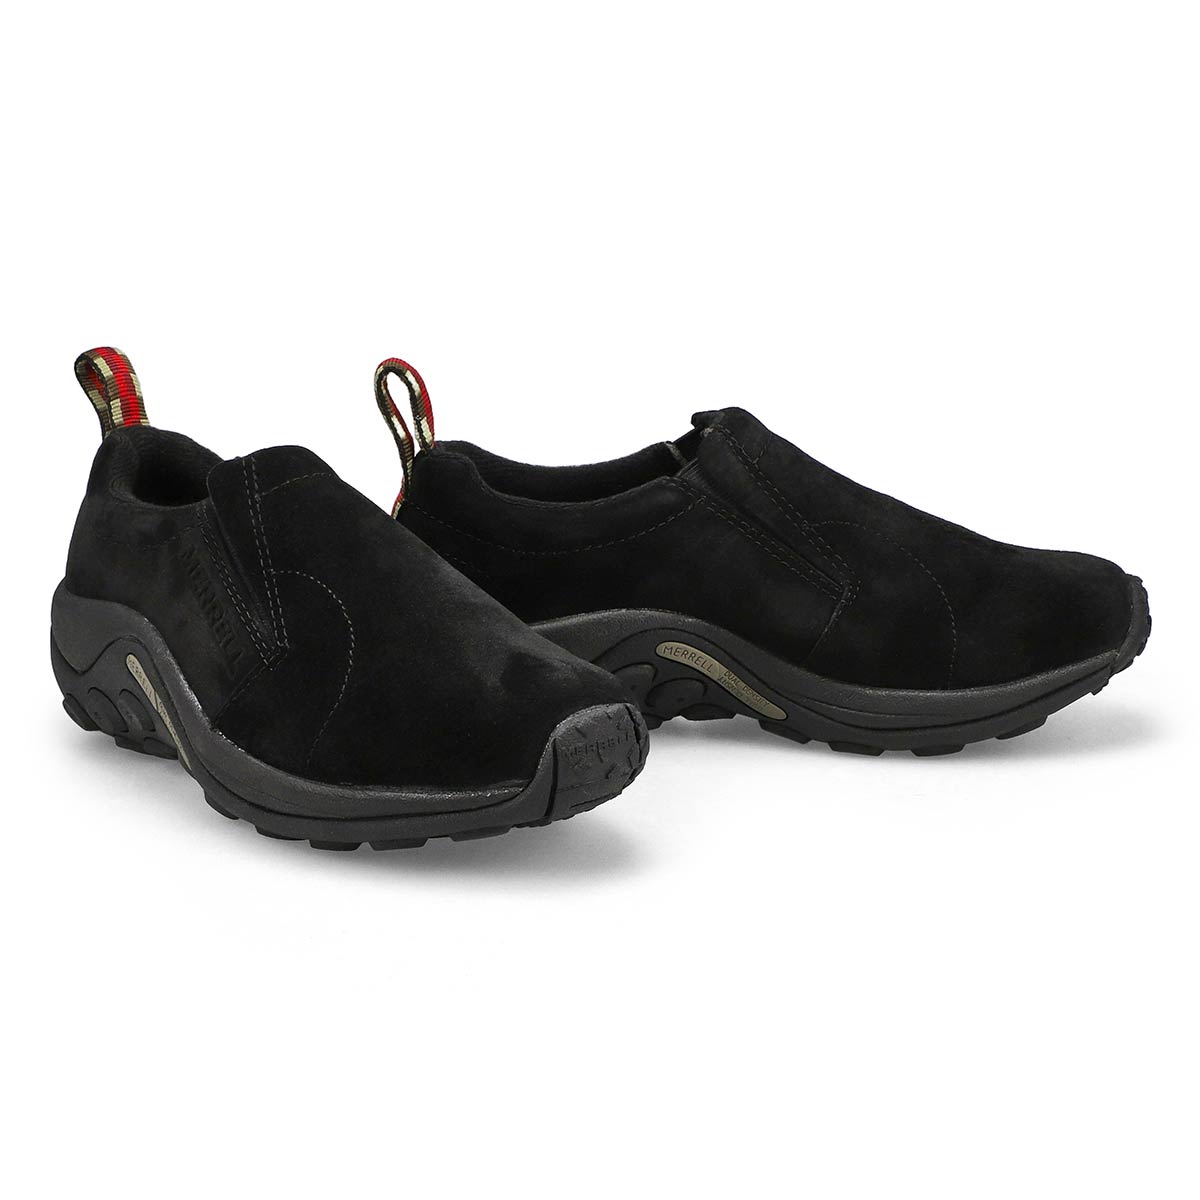 maler gjorde det aflivning Merrell Women's JUNGLE MOC black slip-on shoe | SoftMoc.com